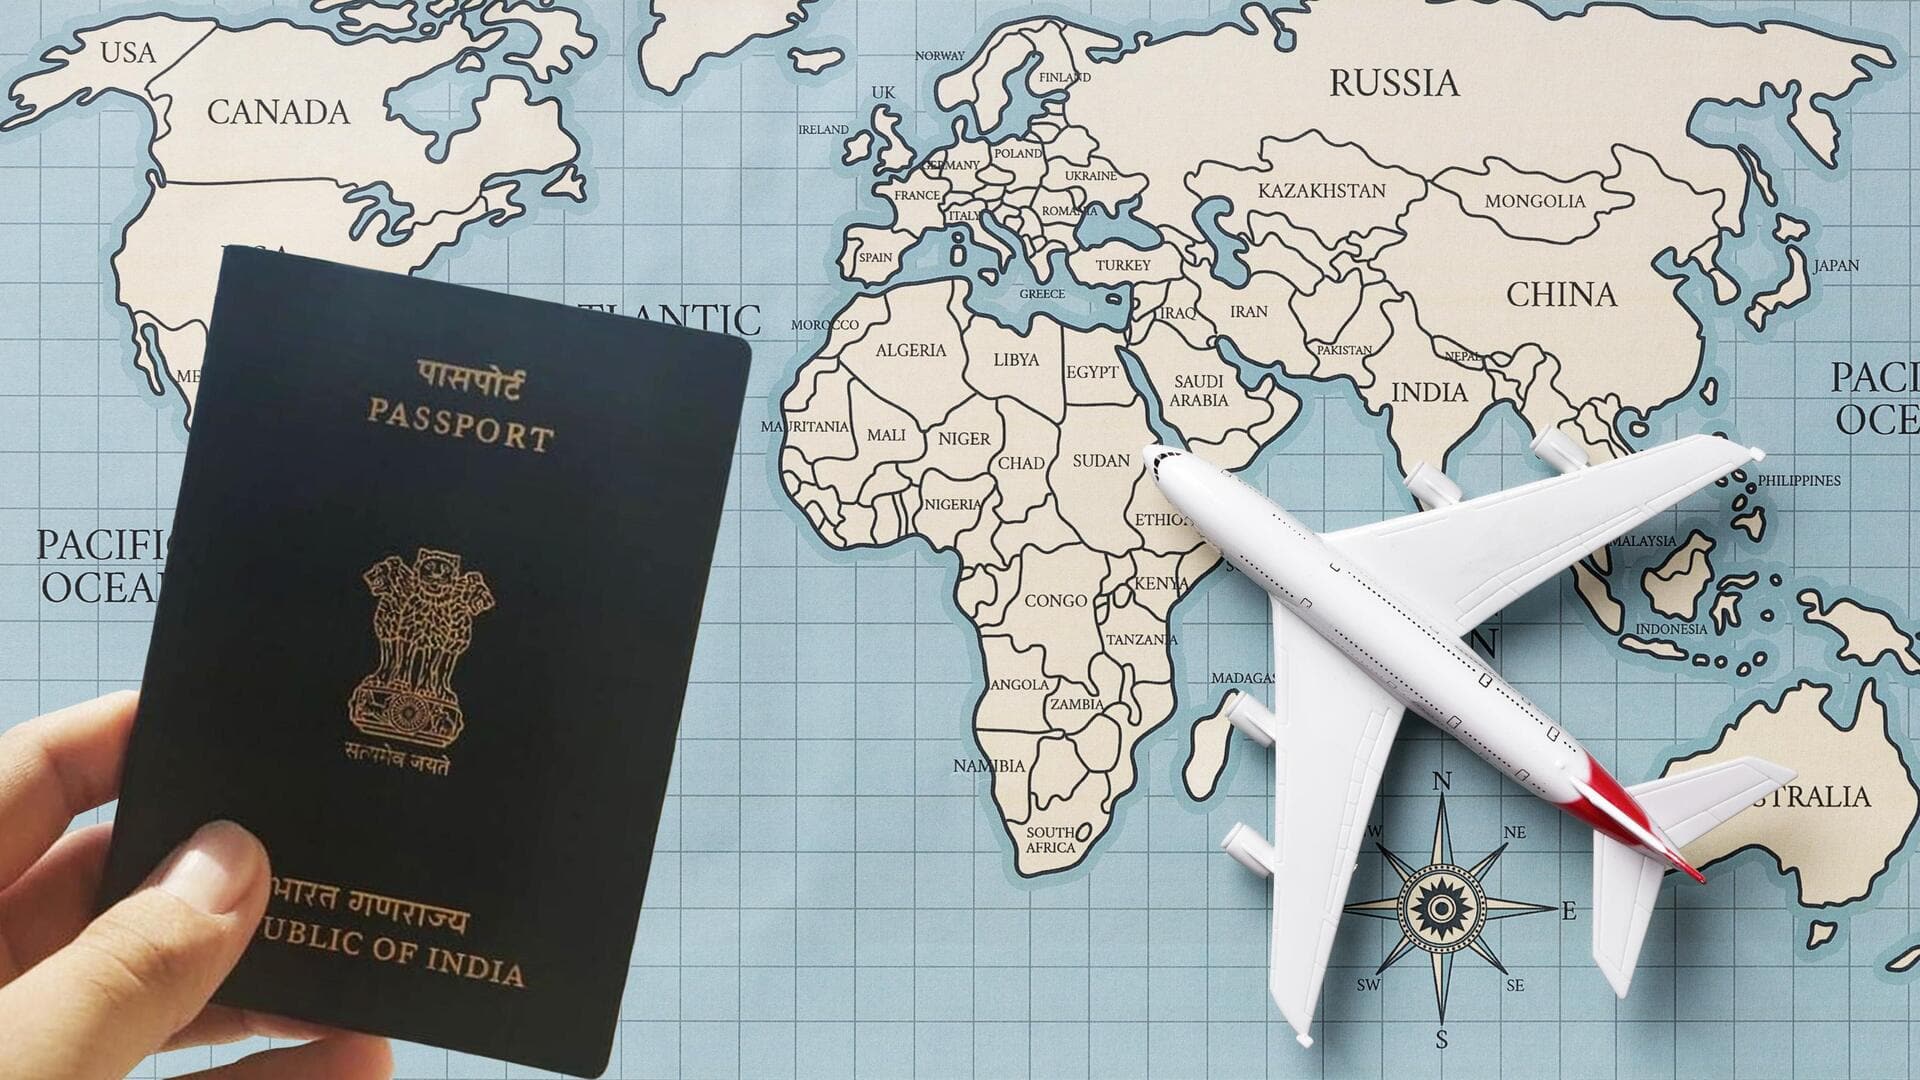 सबसे शक्तिशाली पासपोर्ट: भारत 80वें स्थान पर; अमेरिका नहीं, यह देश पहले नंबर पर